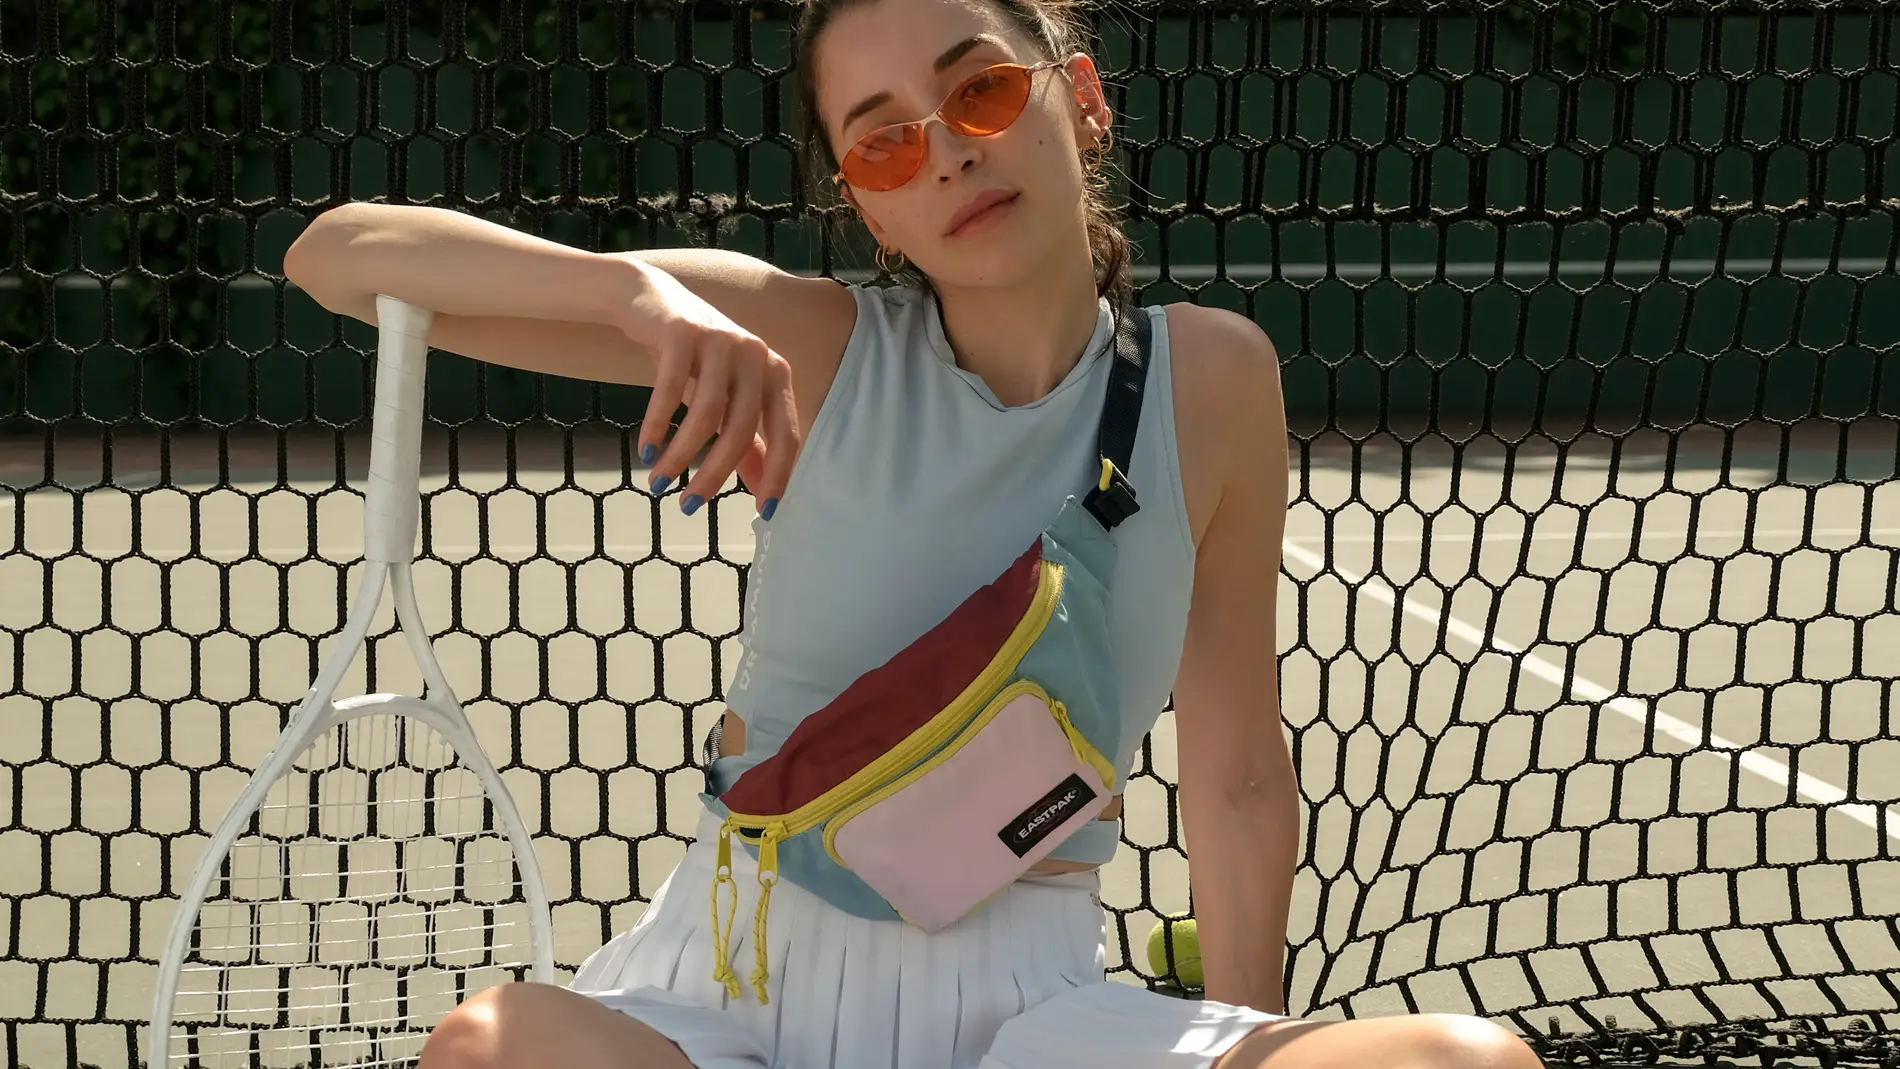 Chica con gafas de sol, riñonera, camiseta sin mangas, minifalda plisada, calcetines altos y deportivas en una pista de tenis.